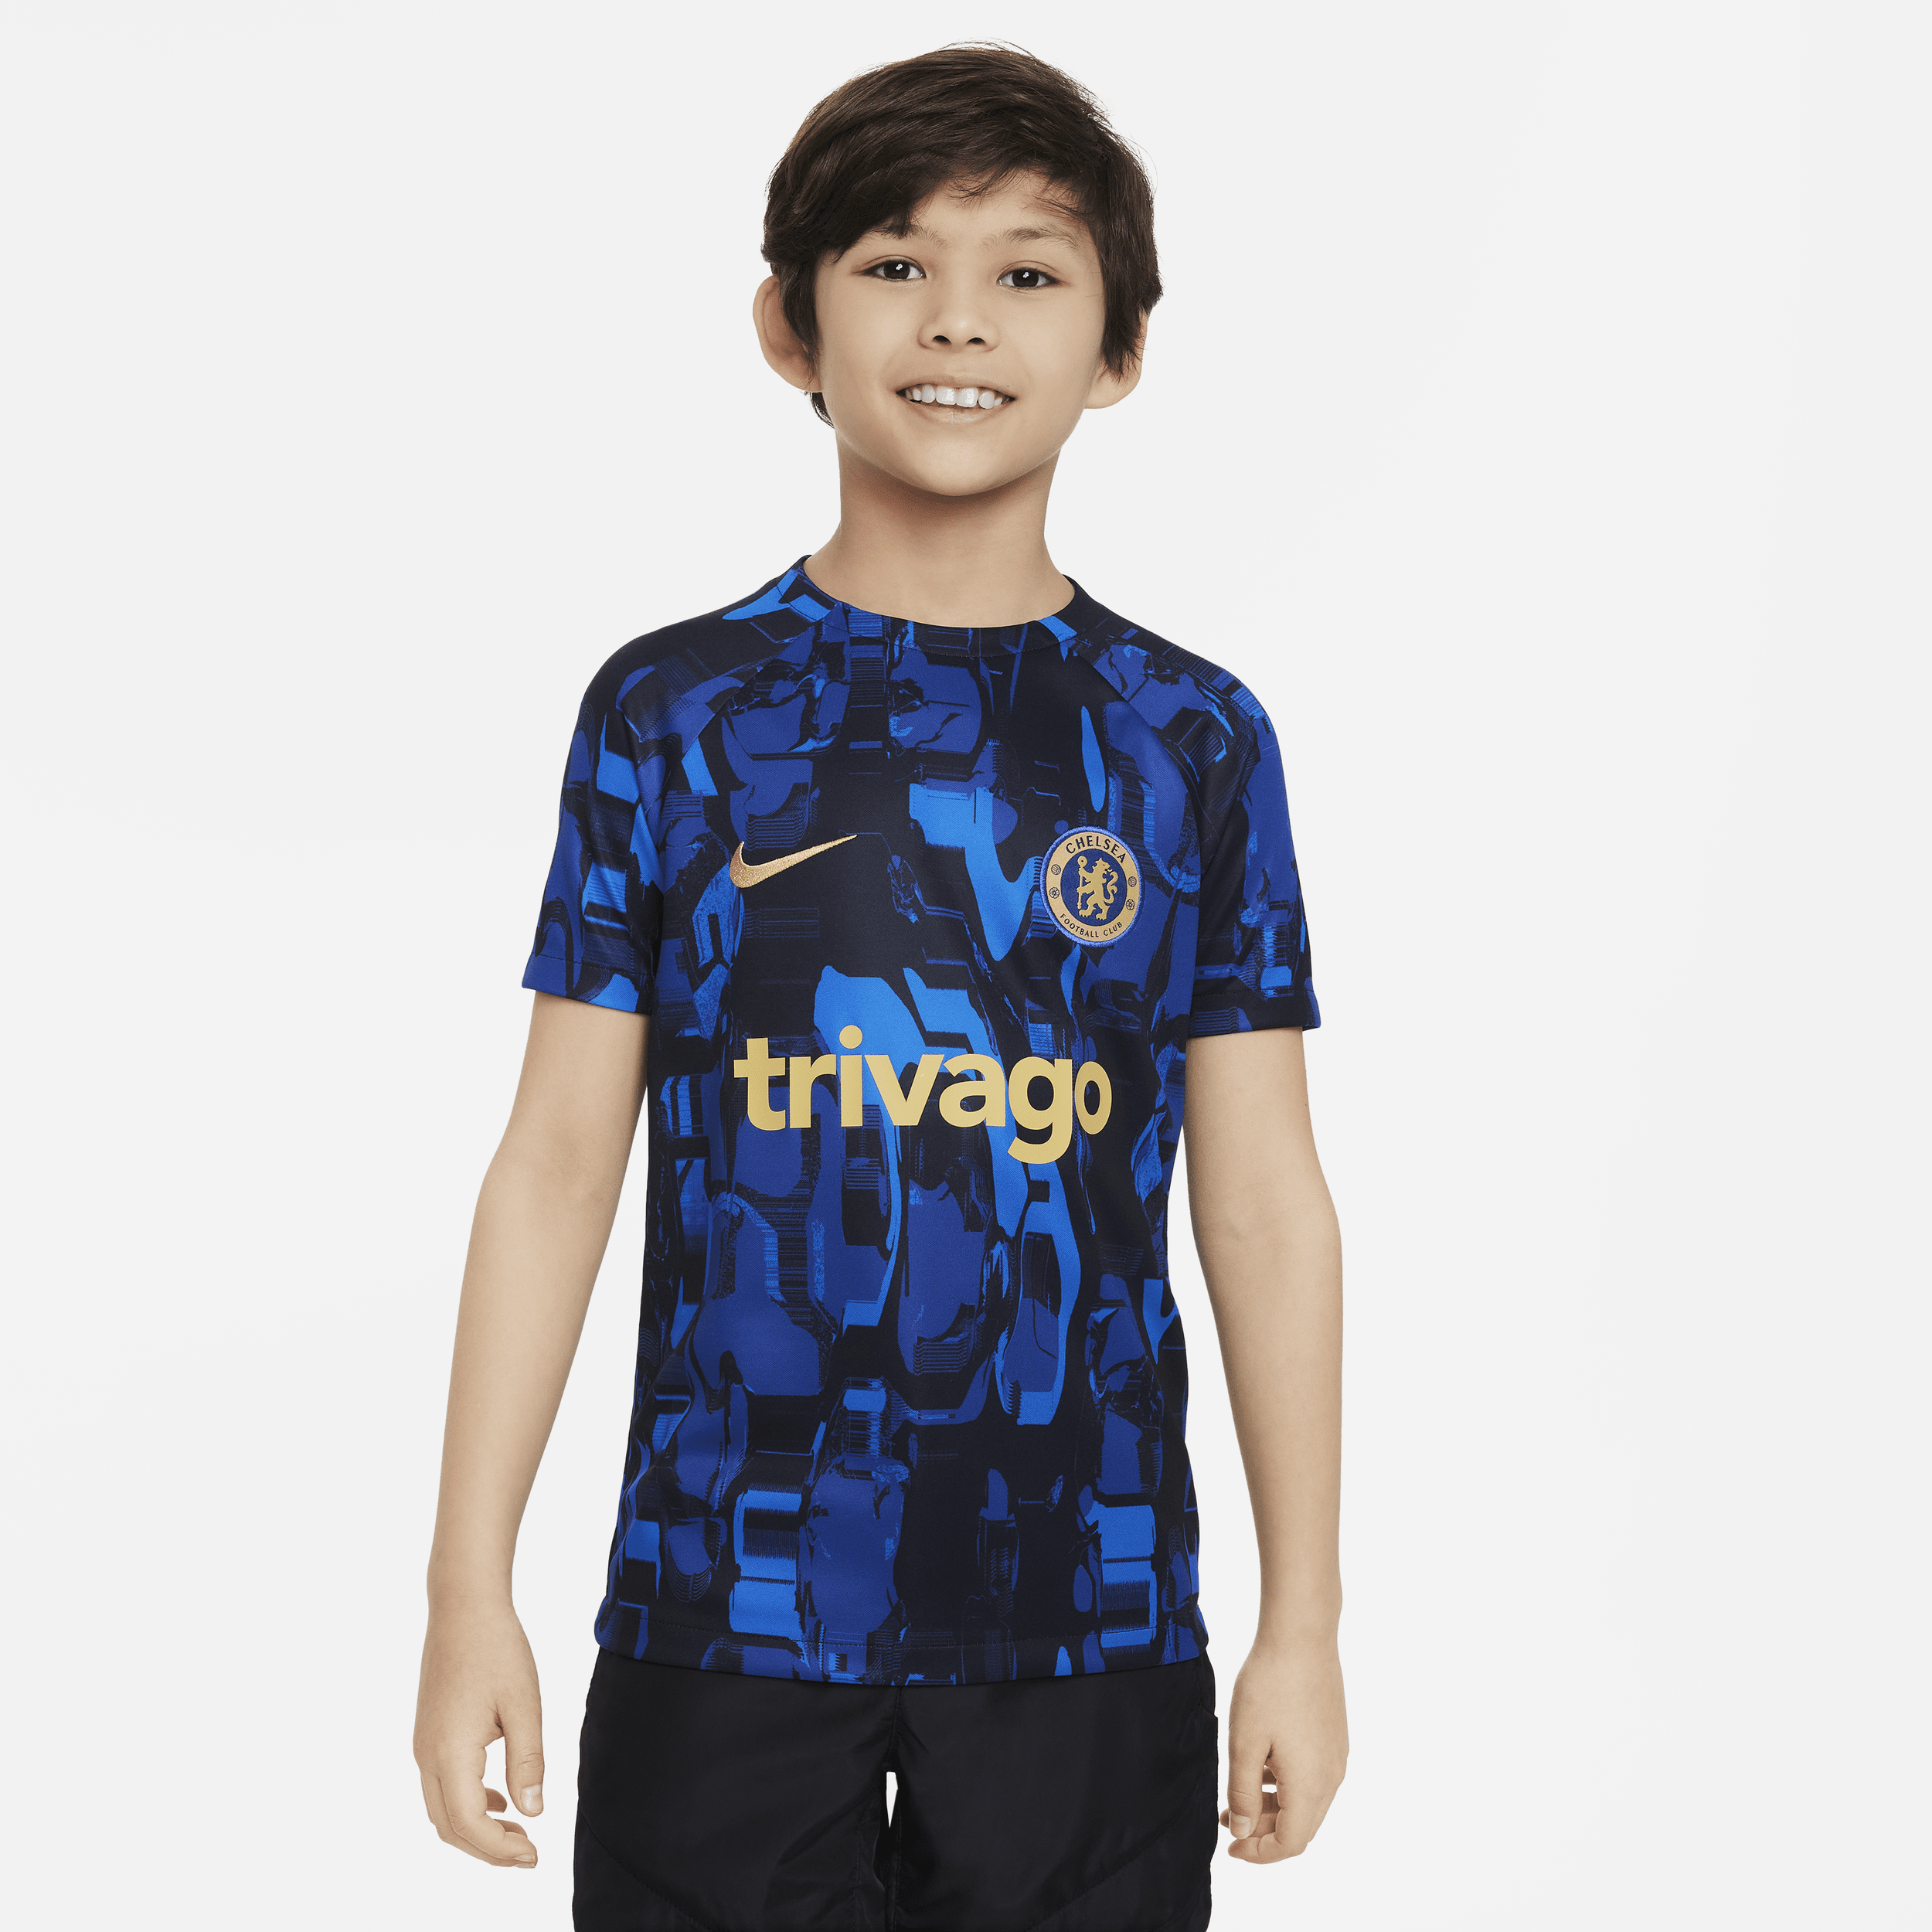 Chelsea FC Academy Pro Nike warming-uptop met Dri-FIT voor kids - Blauw